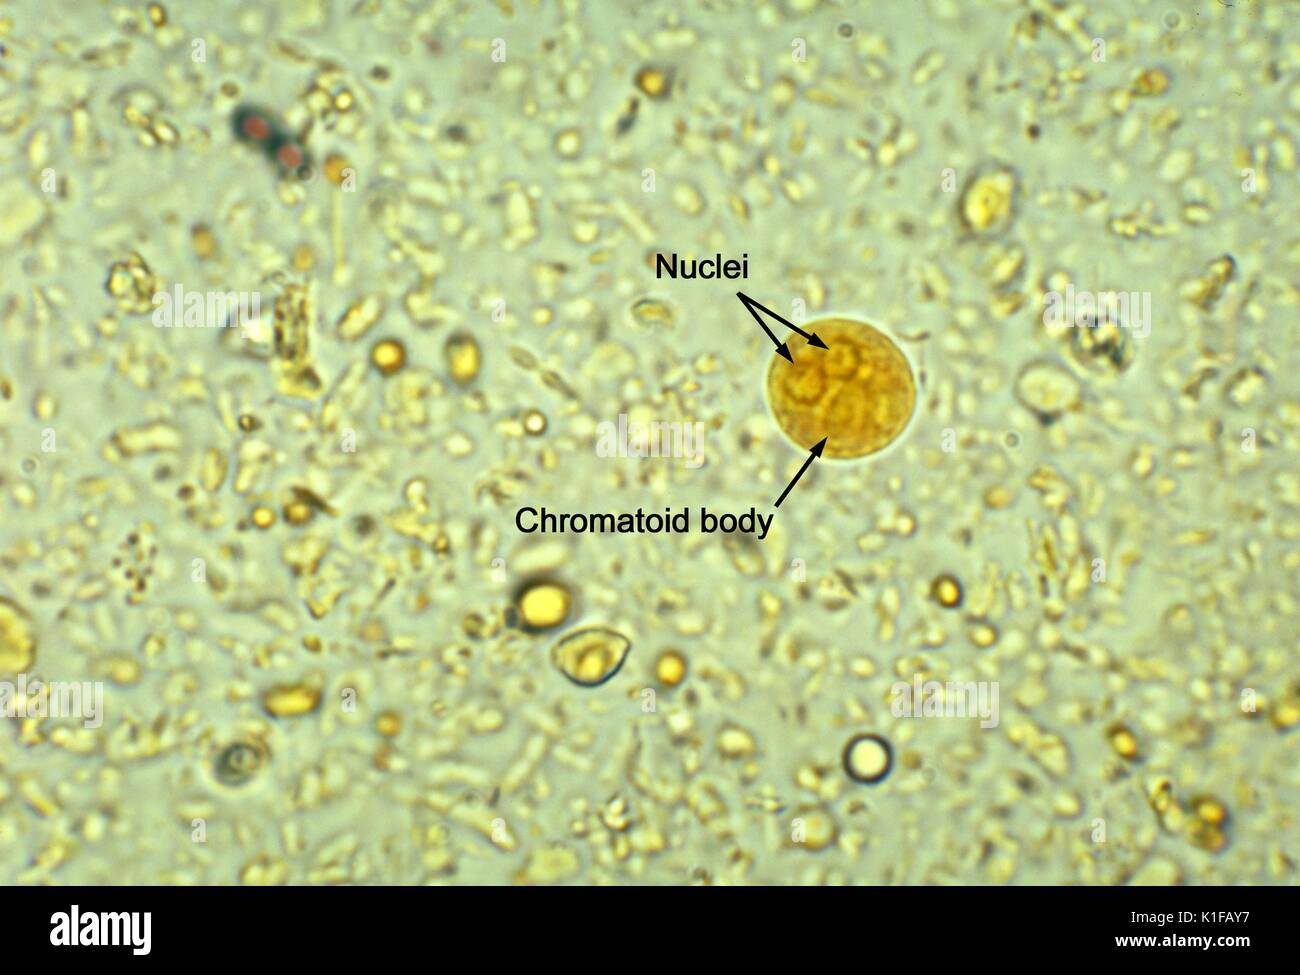 Questo iodio-colorate fotomicrografia rivelato ultrastrutturali morfologia presentata da un binucleated cisti di un Entamoeba histolytica ameba parassita in un concentrato di montaggio umido. Notare il corpo chromatoid con blunt, le estremità arrotondate e solo due nuclei sono visibili in questo piano focale. Coppia Entamoeba histolytica cisti hanno 4 nuclei che caratteristicamente hanno localizzato centralmente e karyosomes e belle, uniformemente distribuiti cromatina periferica. Le cisti di solito misura 12 a 15 {micro}m. Immagine cortesia CDC/Dott. Mae Melvin, 1977. Foto Stock